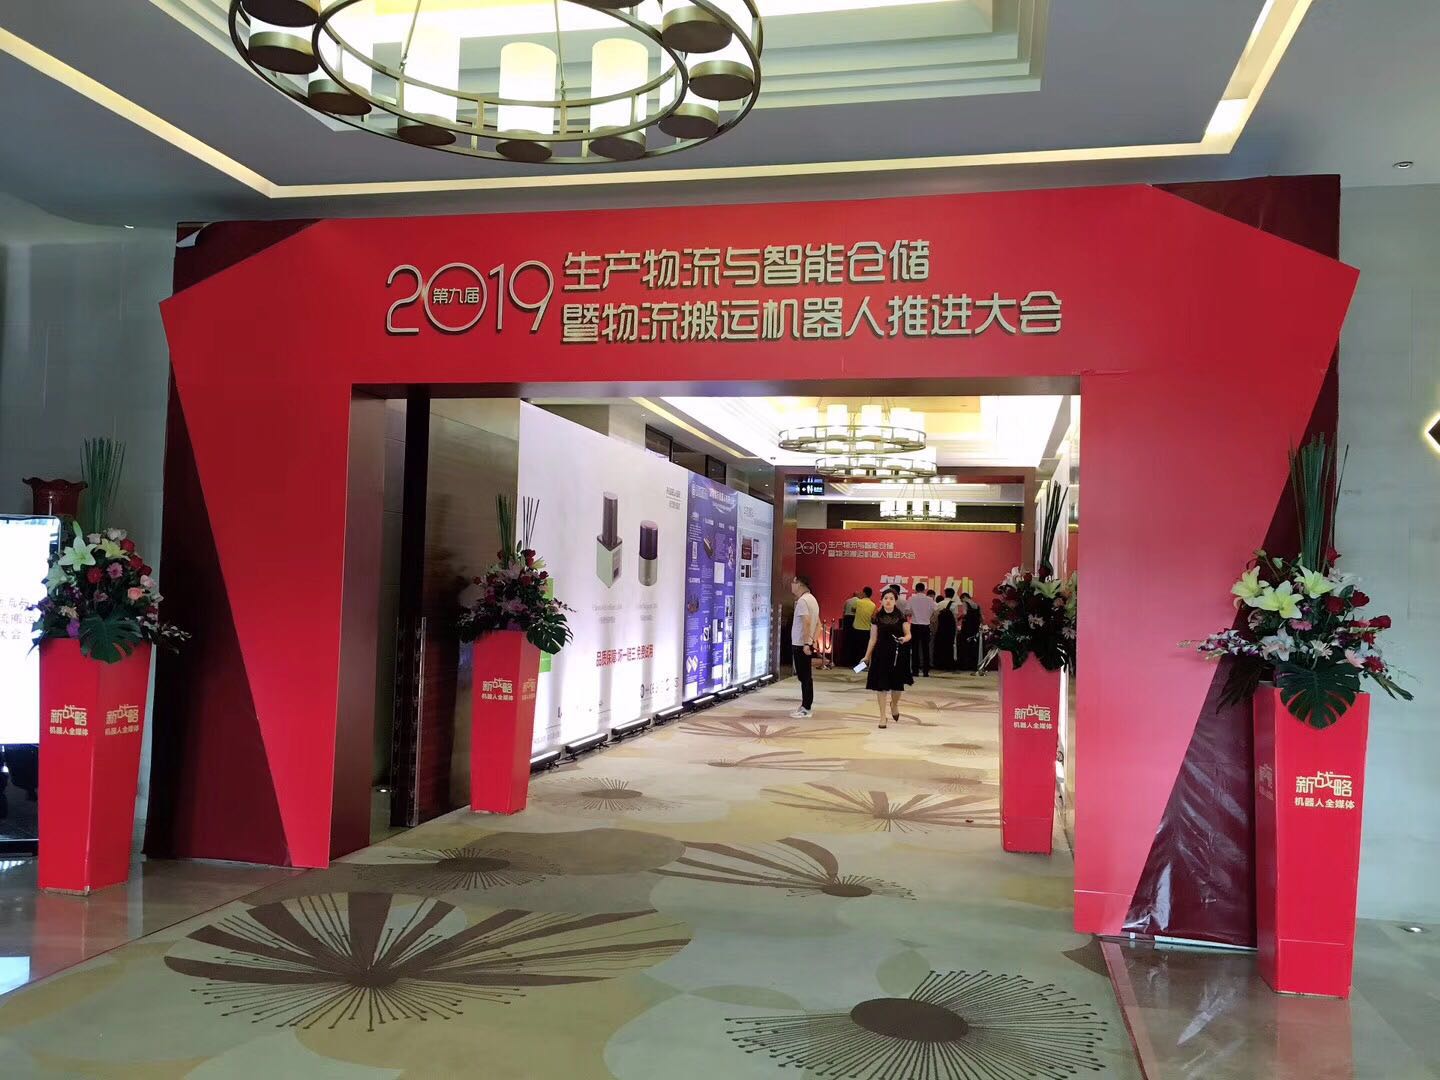 砝石激光雷达赞助的华南区最受瞩目的AGV盛会——第九届生产物流与智能仓储暨物流搬运机器人推进大会在鹏举行